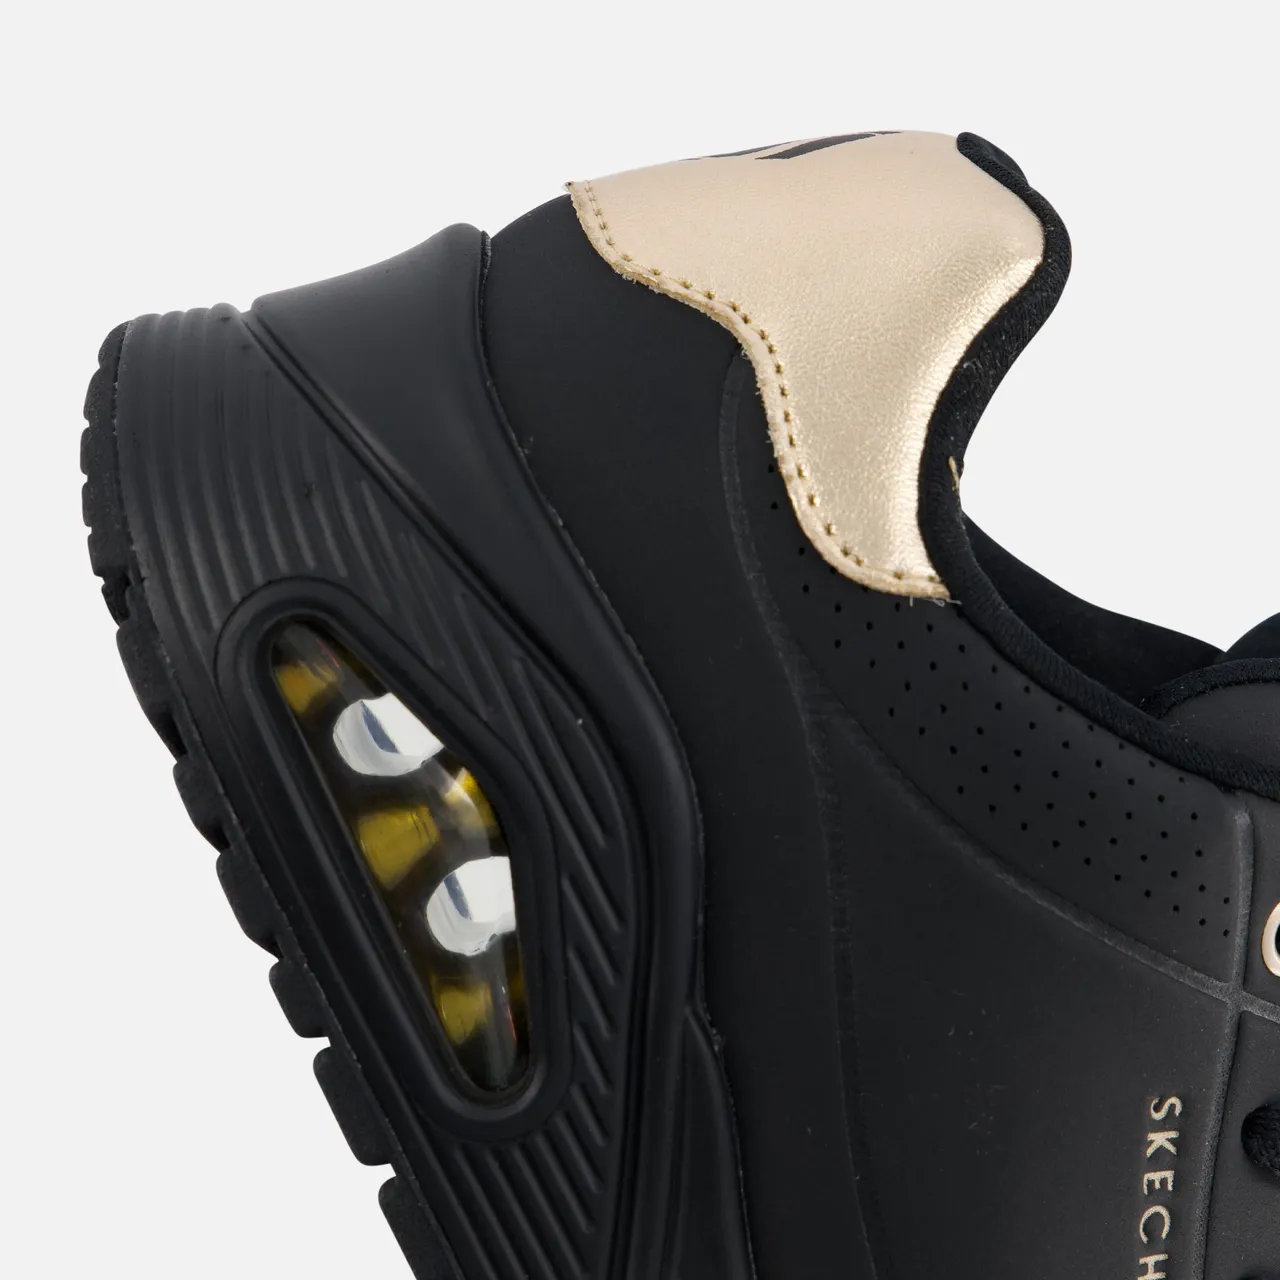 Skechers Uno Golden Air Sneakers zwart